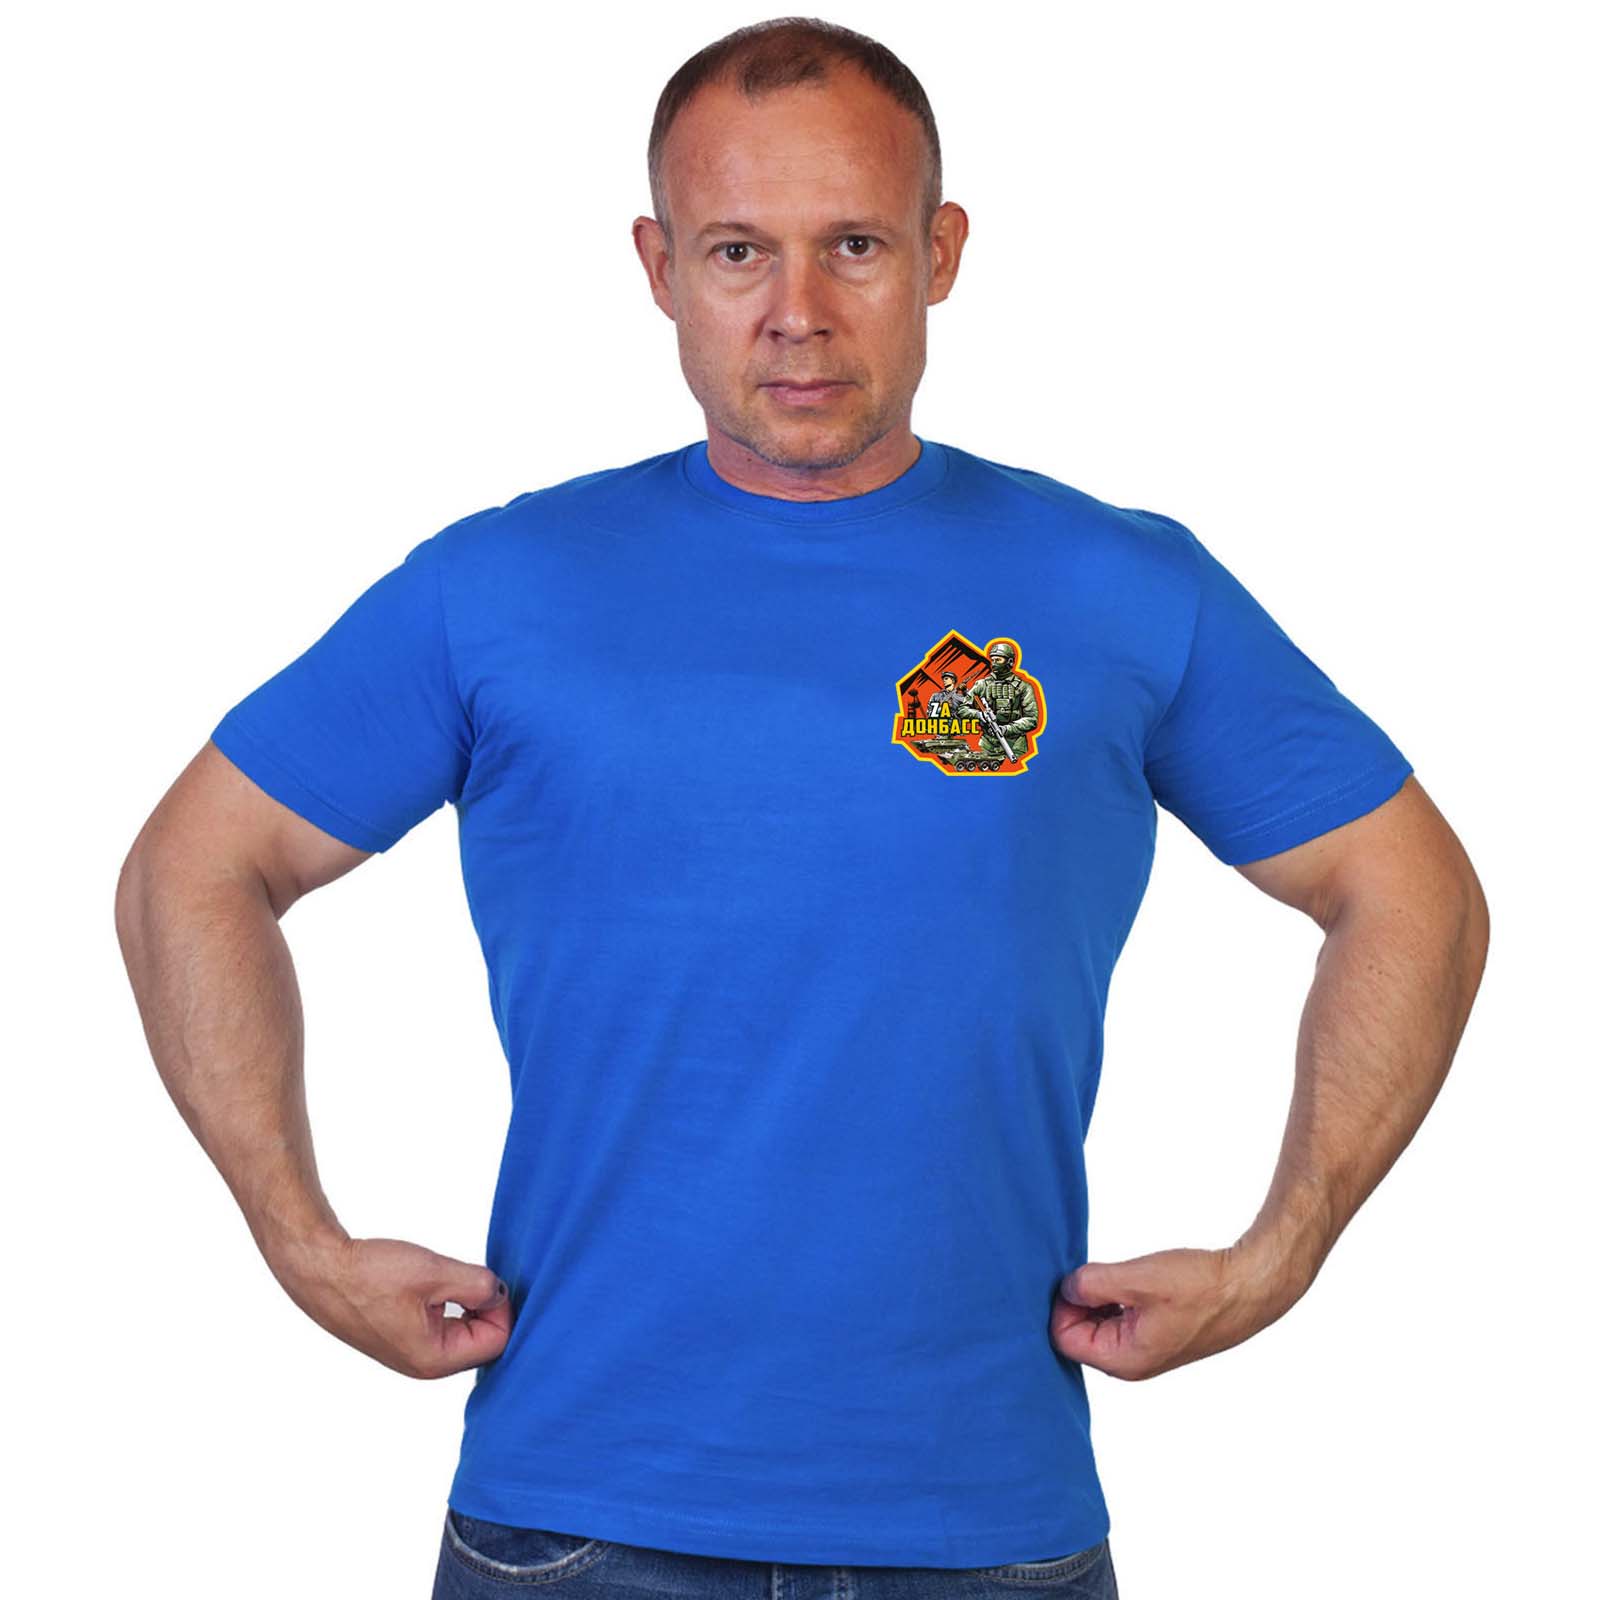 Васильковая футболка с термоаппликацией "Zа Донбасс"